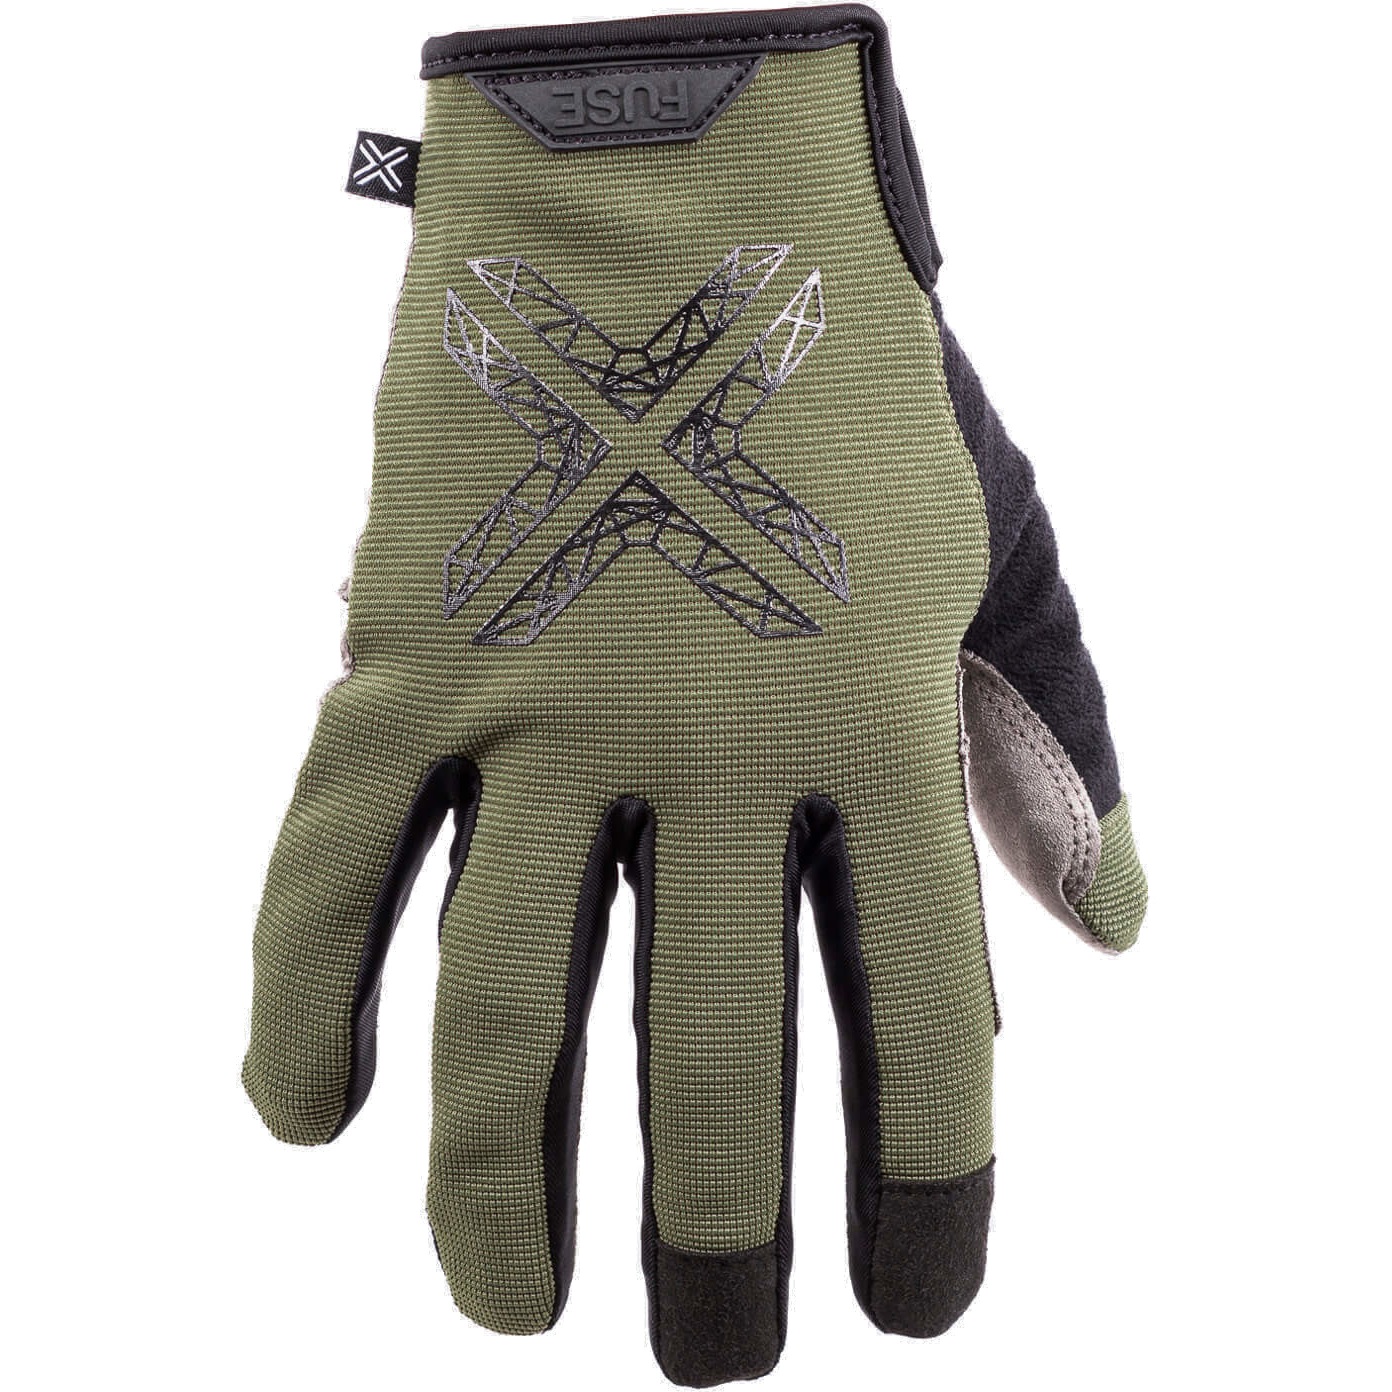 Produktbild von Fuse Stealth Handschuhe - grün